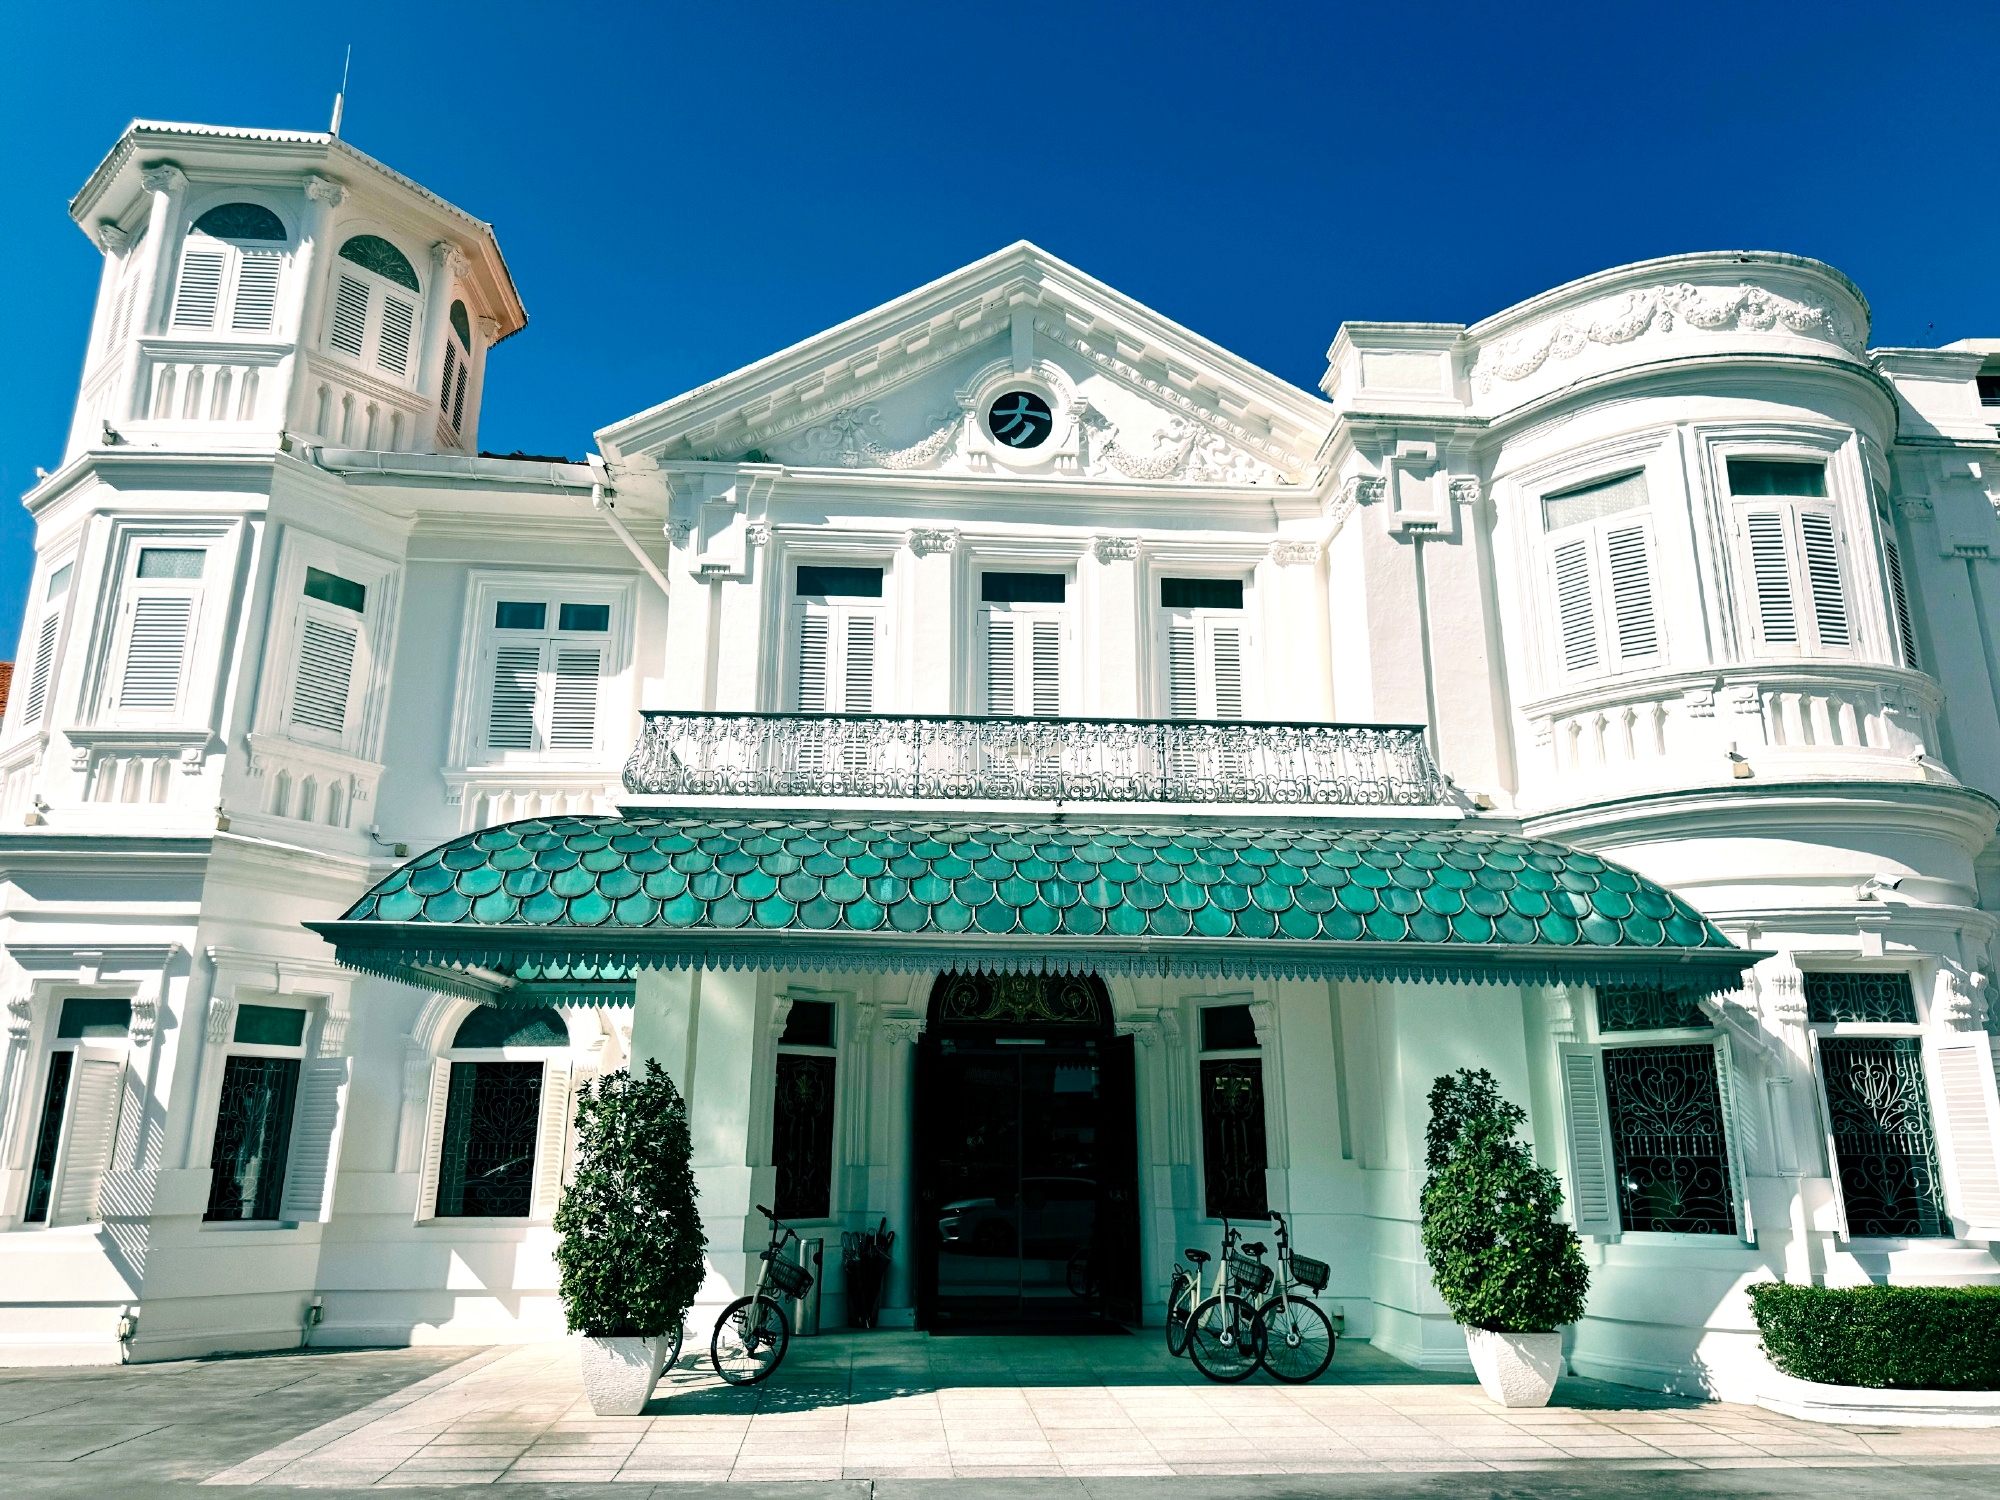 马来西亚—槟城—麦卡利斯特庄园酒店 一整个酒店只有8个房间 然后每个房间现在算旺季吧 1200到16